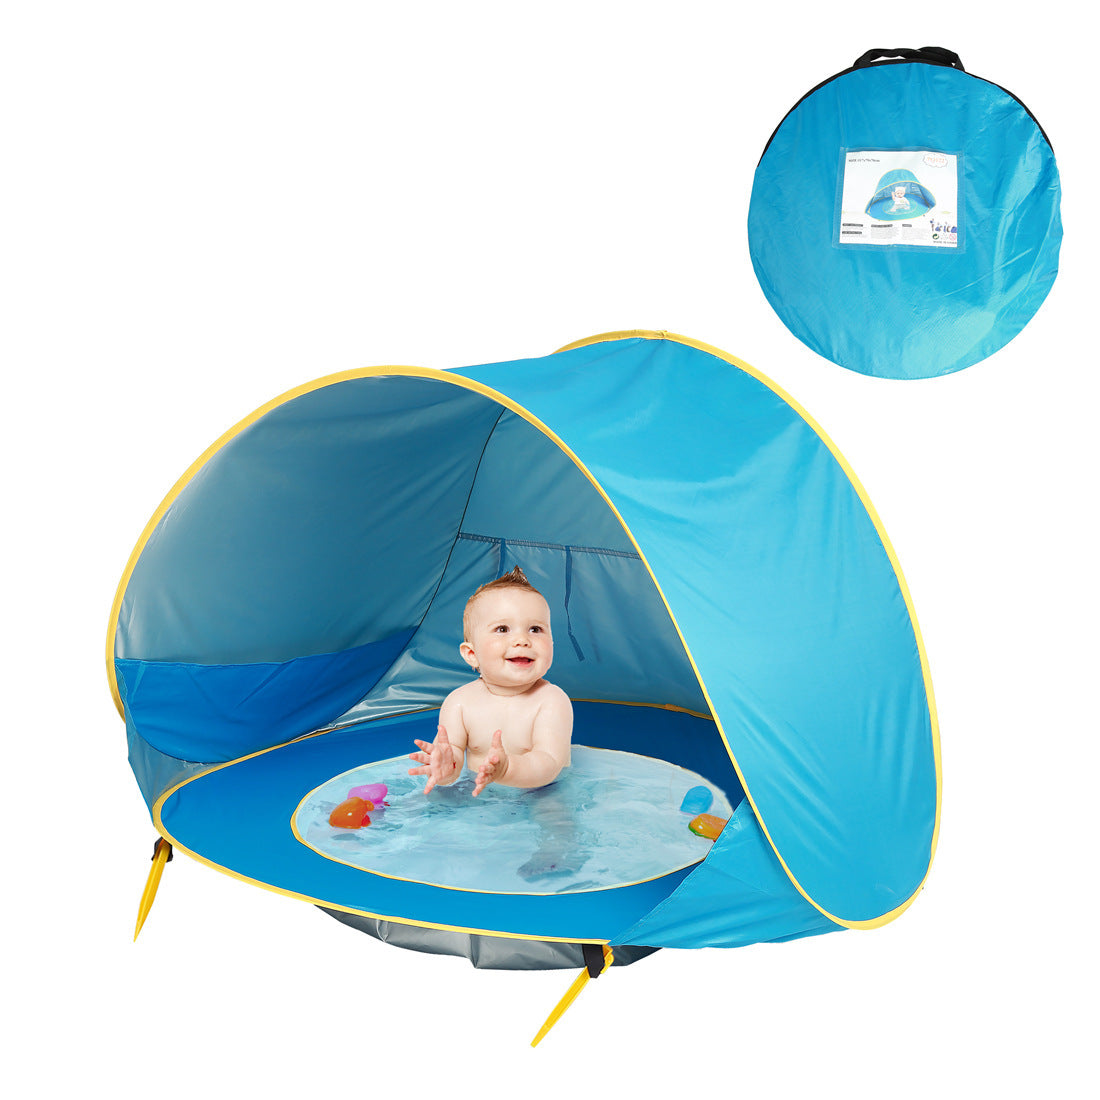 Ein BeachPool Zelt in Blau mit gelben Akzenten, aufgestellt und in Benutzung mit einem lächelnden Baby, das im integrierten Wasserpool sitzt. Das Zelt ist mit Wasserspielzeug ausgestattet. Ein kleines Bild in der oberen rechten Ecke zeigt das Zelt in seiner blauen Tragetasche.